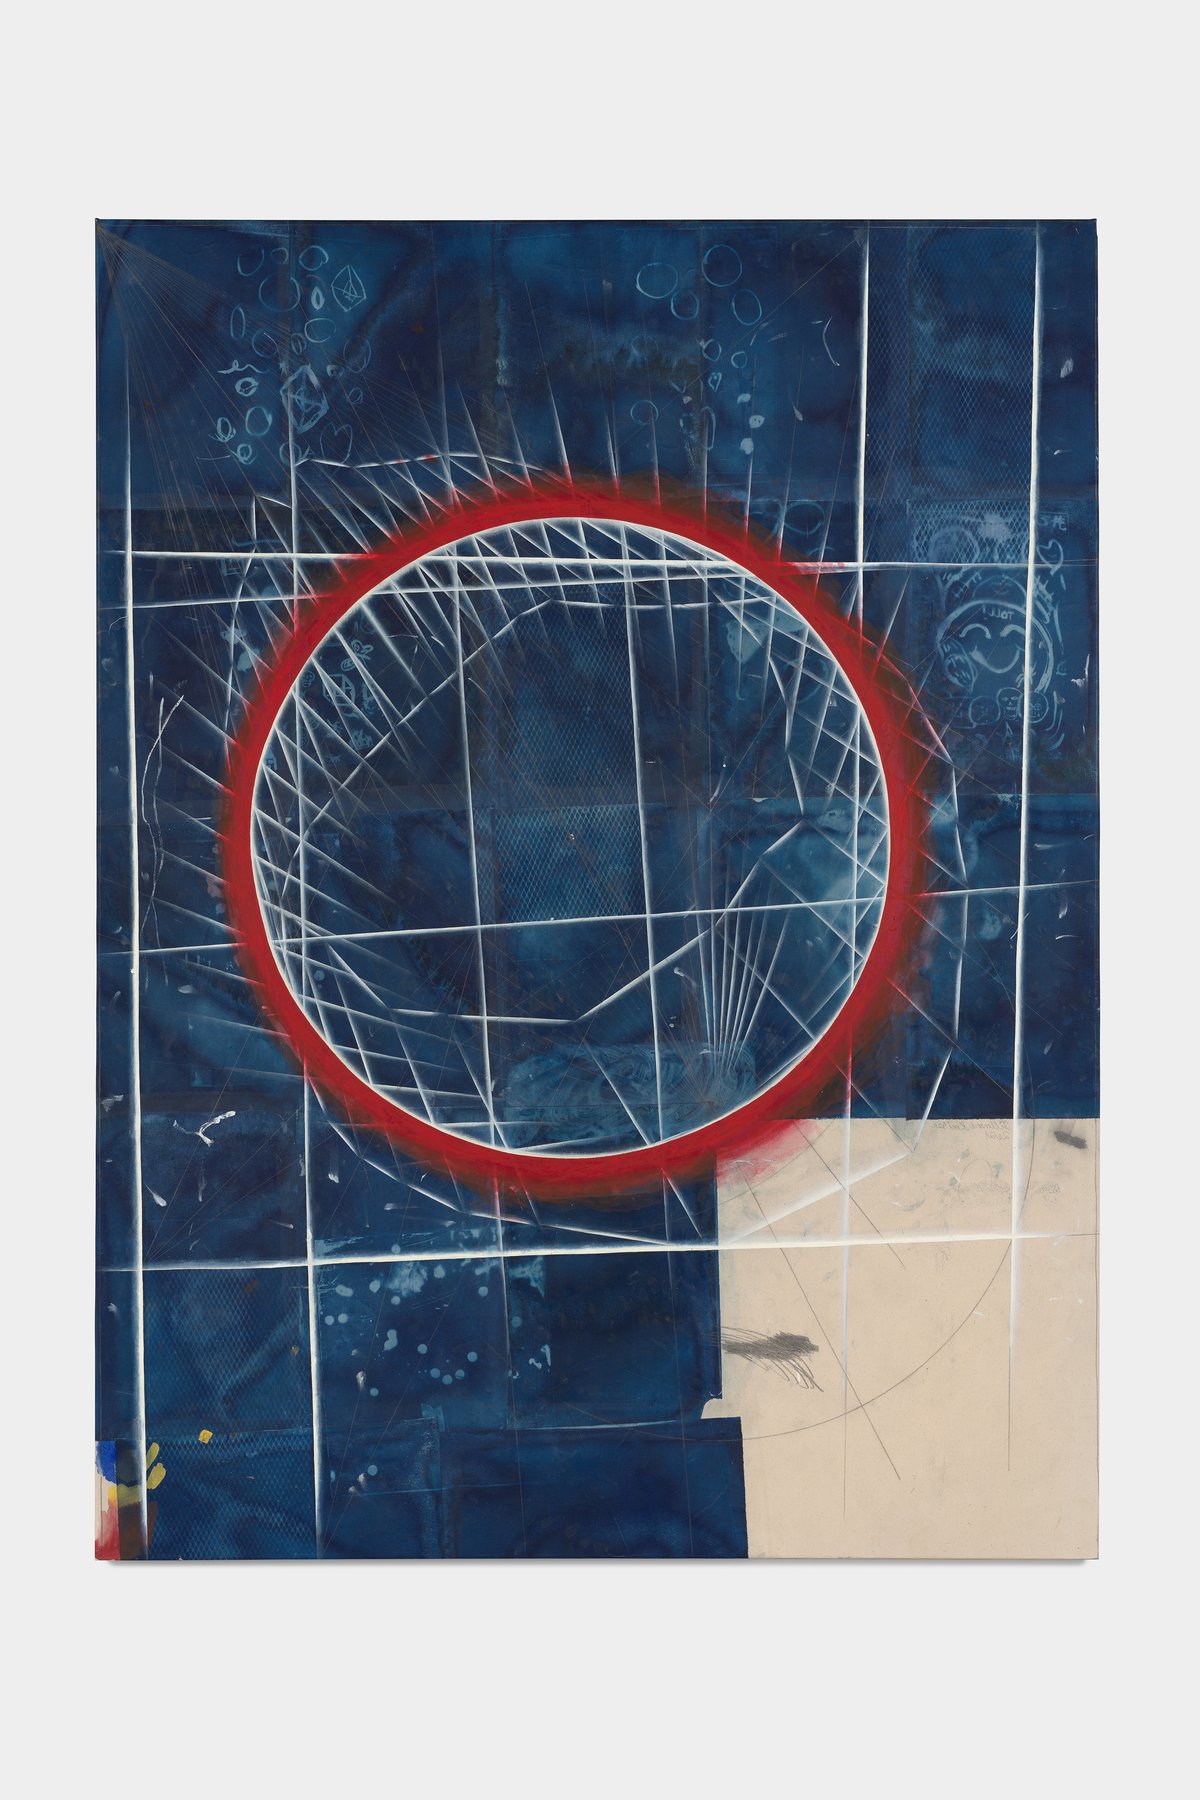 Tillman KaiserToll, 2021Oil/egg tempera on cyanotype on paper &amp; canvas200 x 150 cm